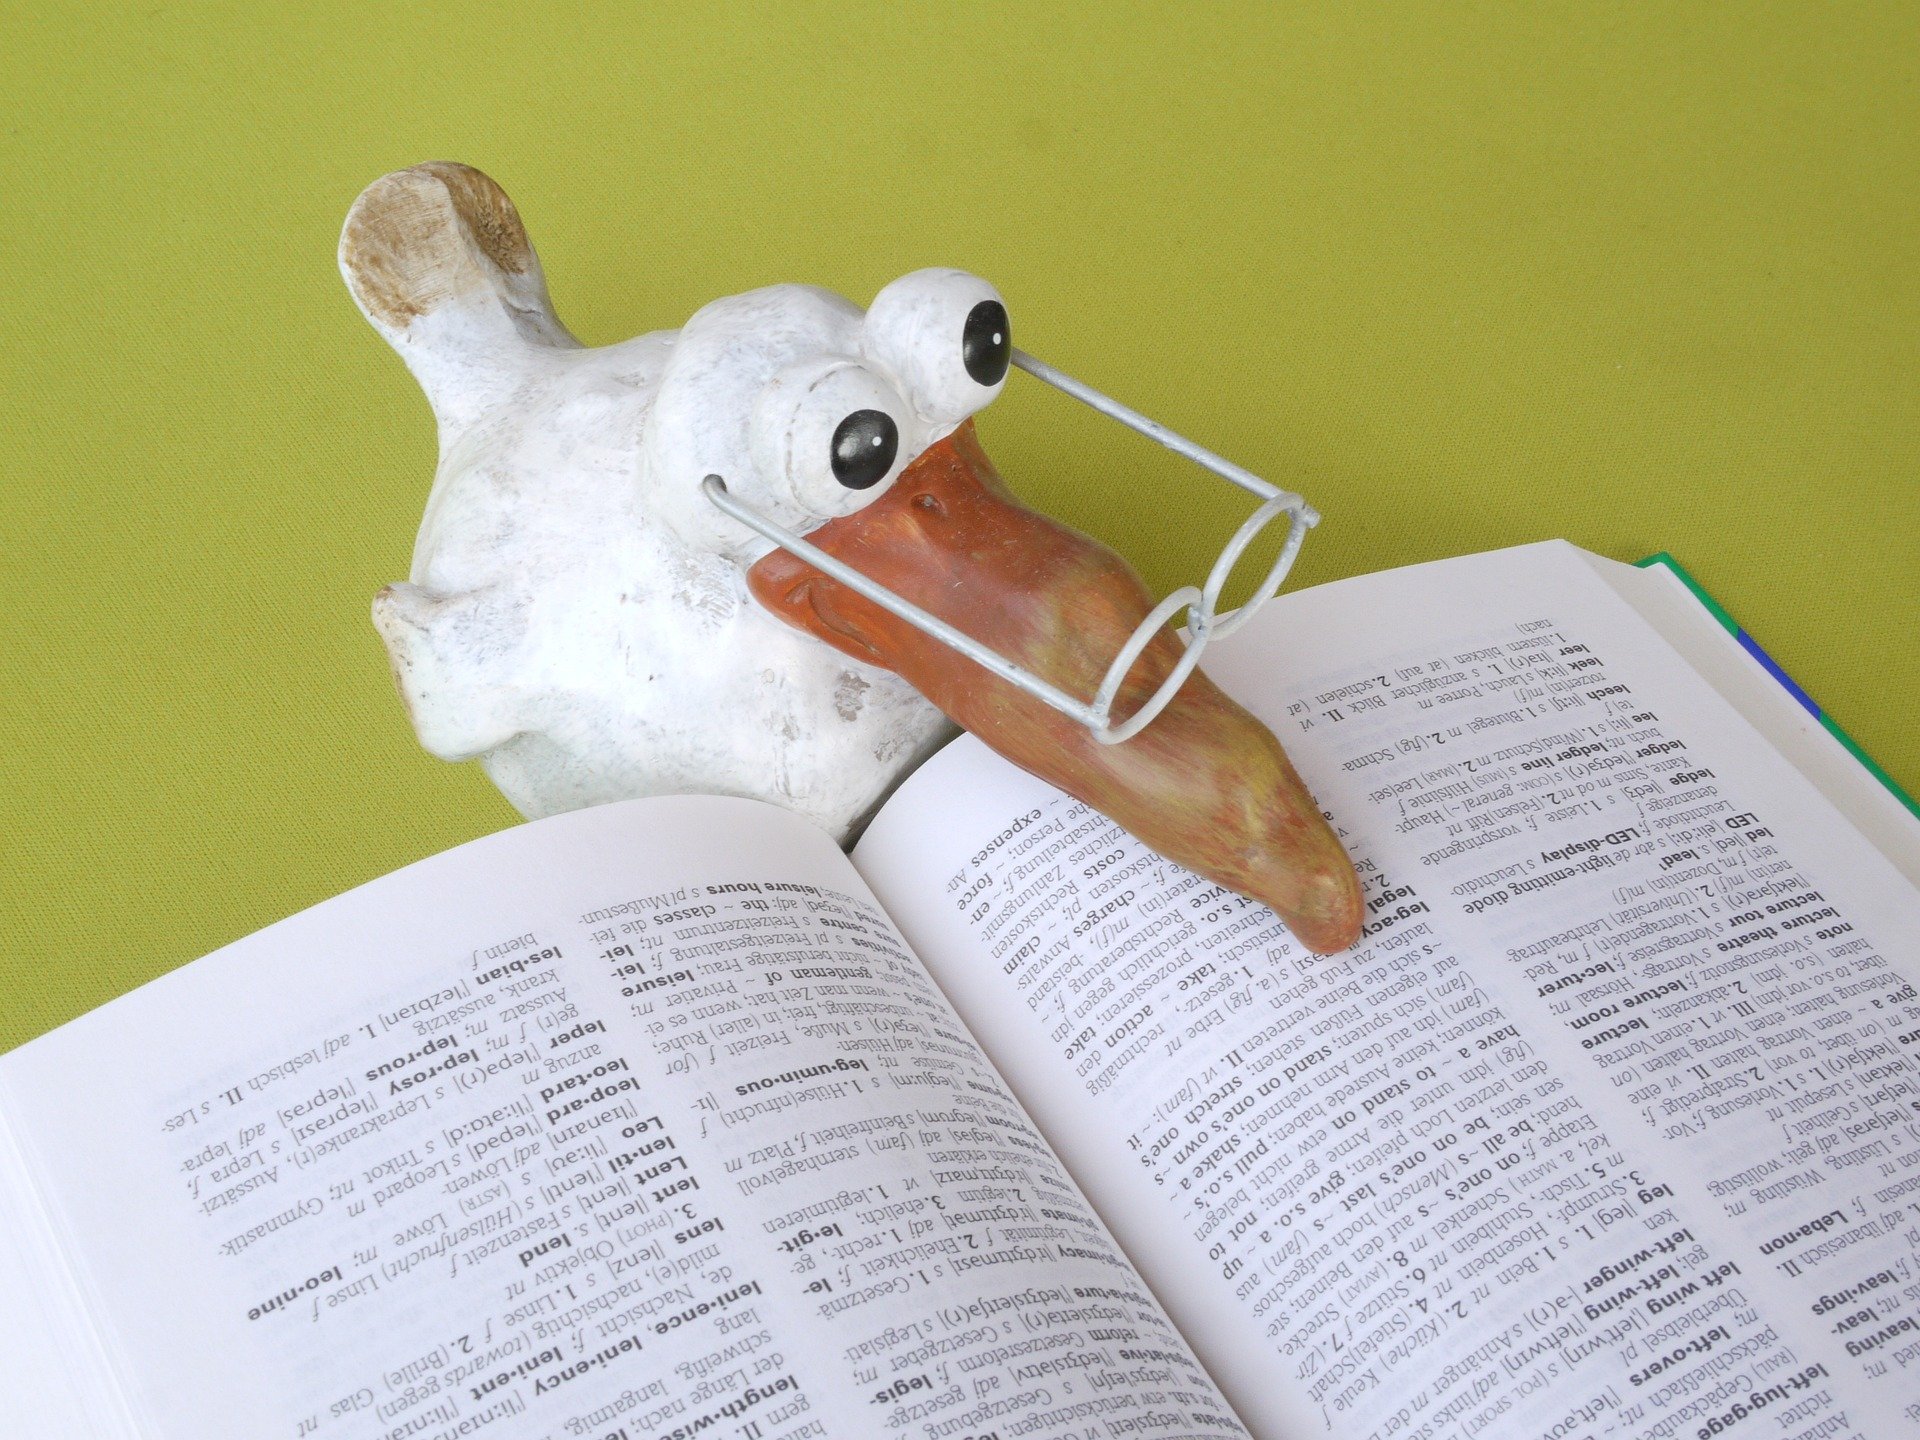 Drevený biely vták s dlhým zobákom a okuliarmi číta v slovníku